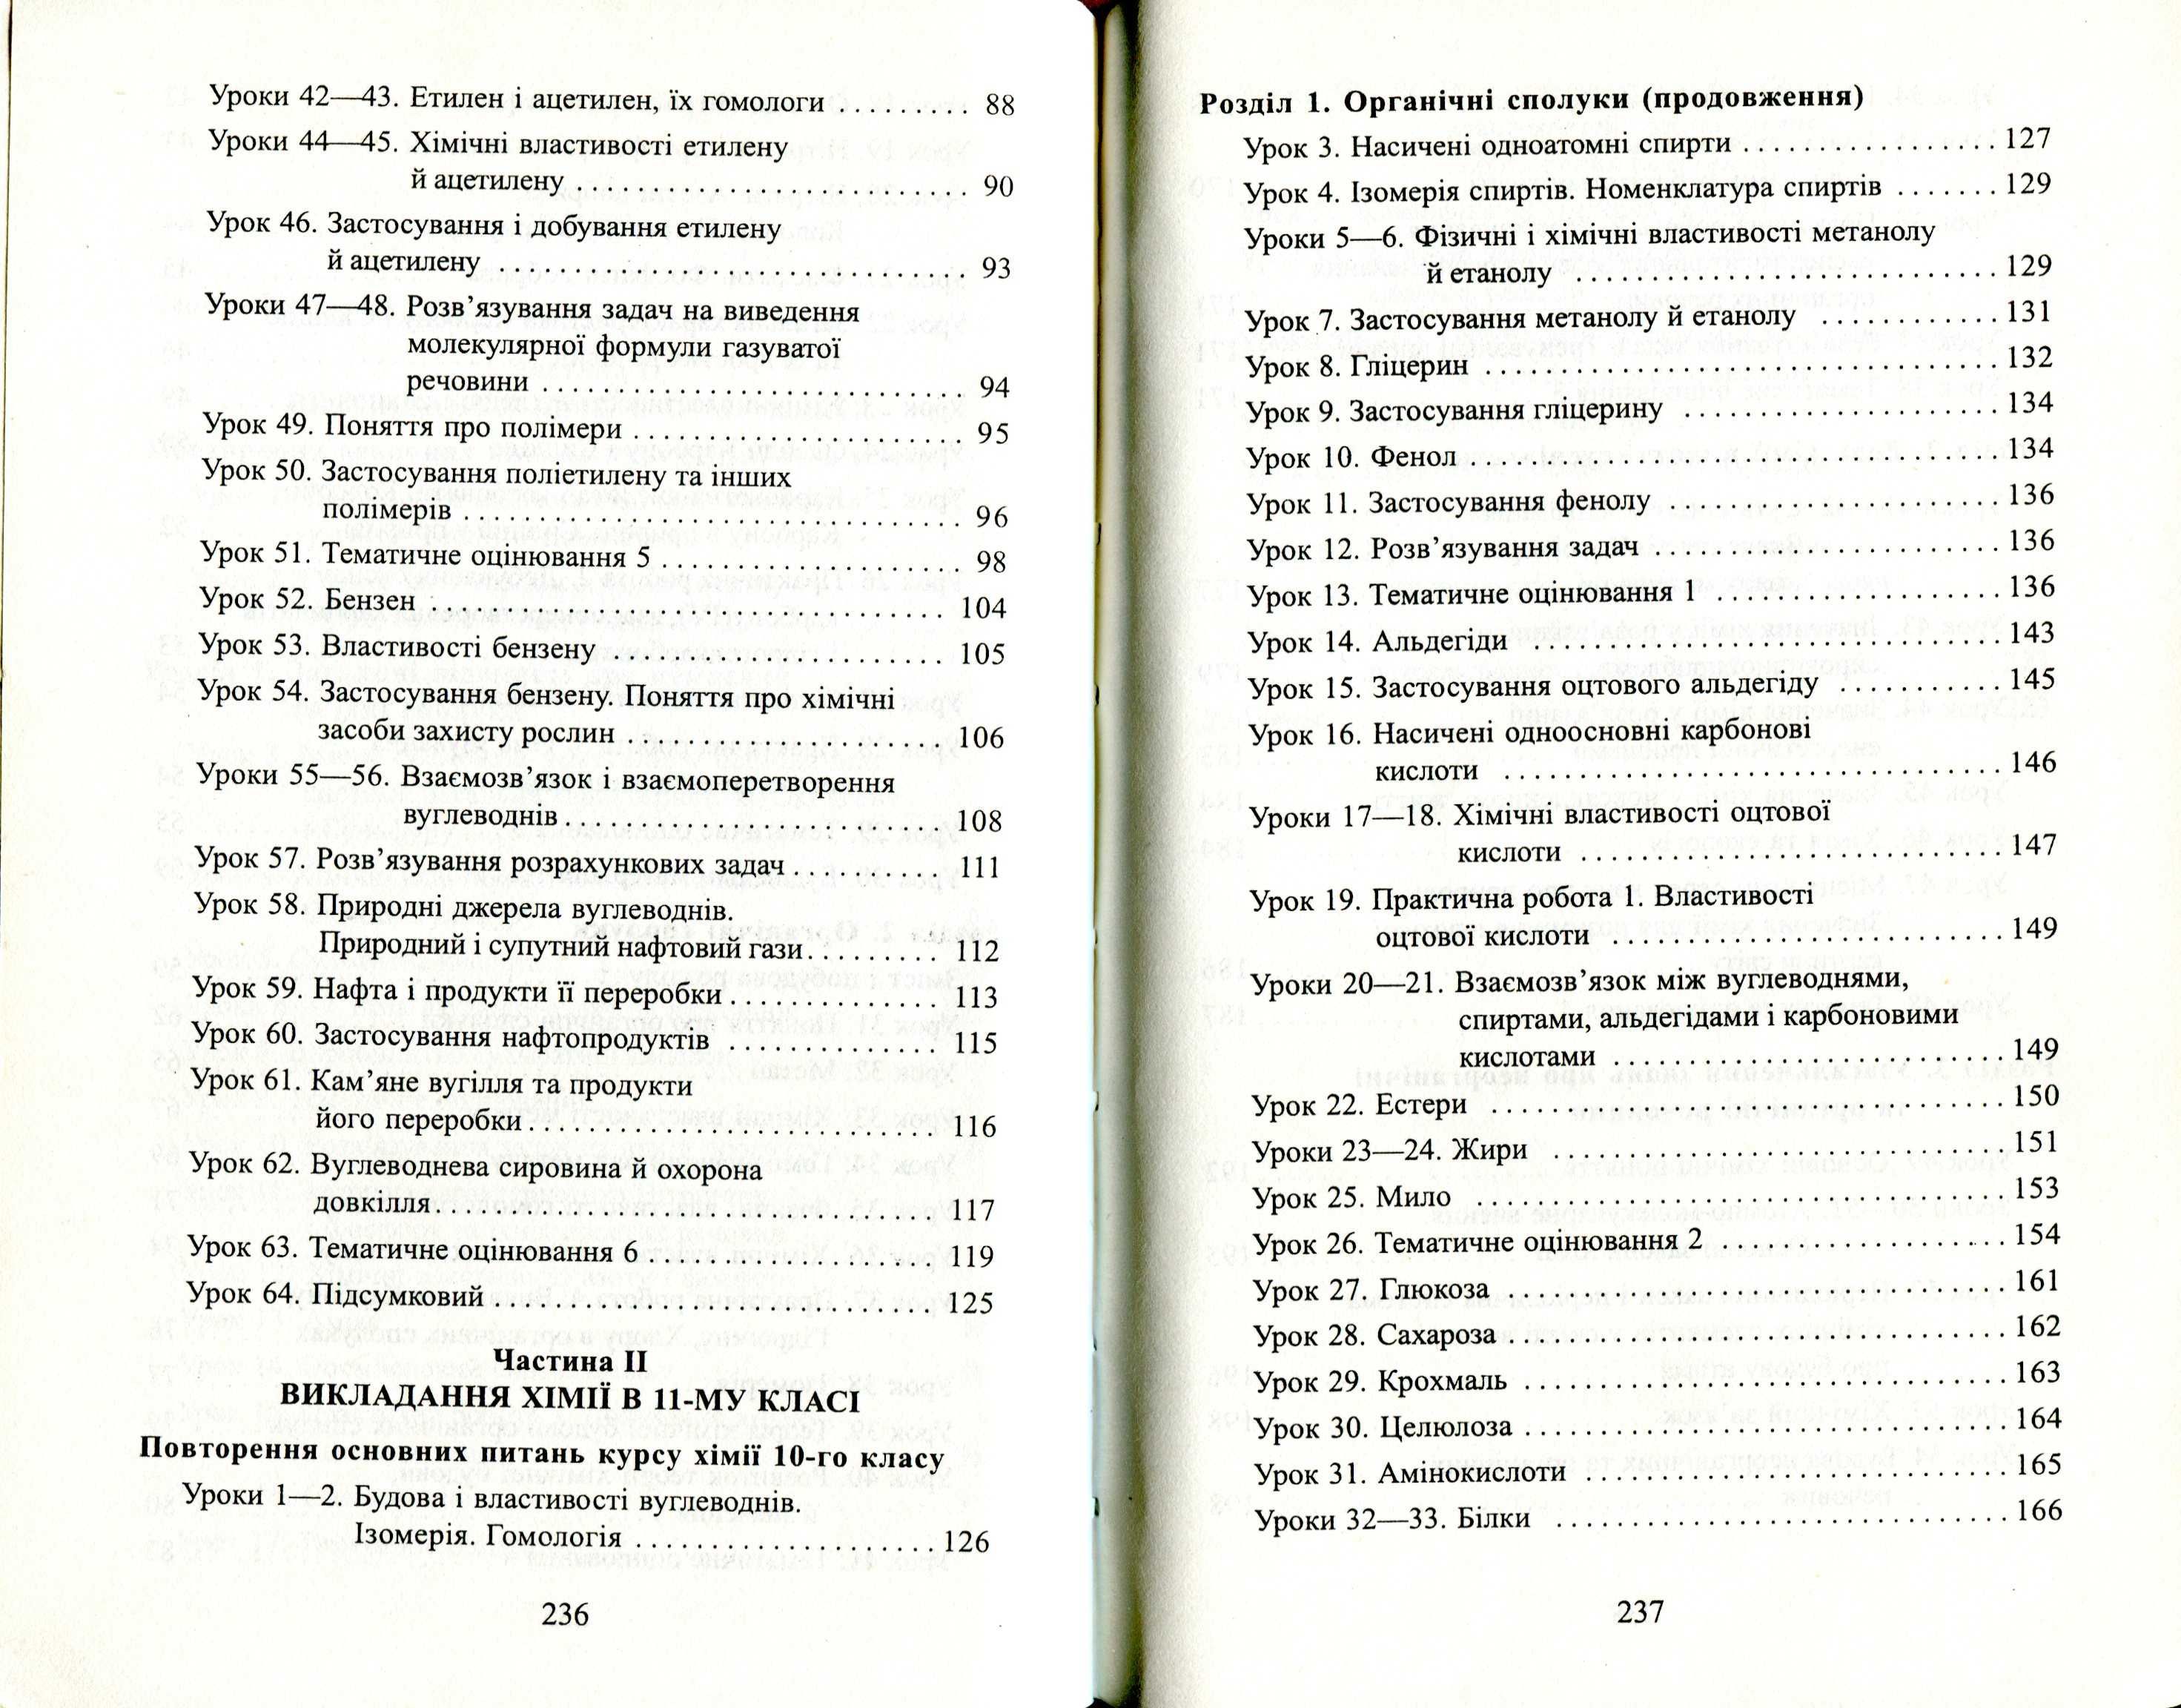 Викладання хімії у 10-11 класах загальноос. навчальних закладів (2002)